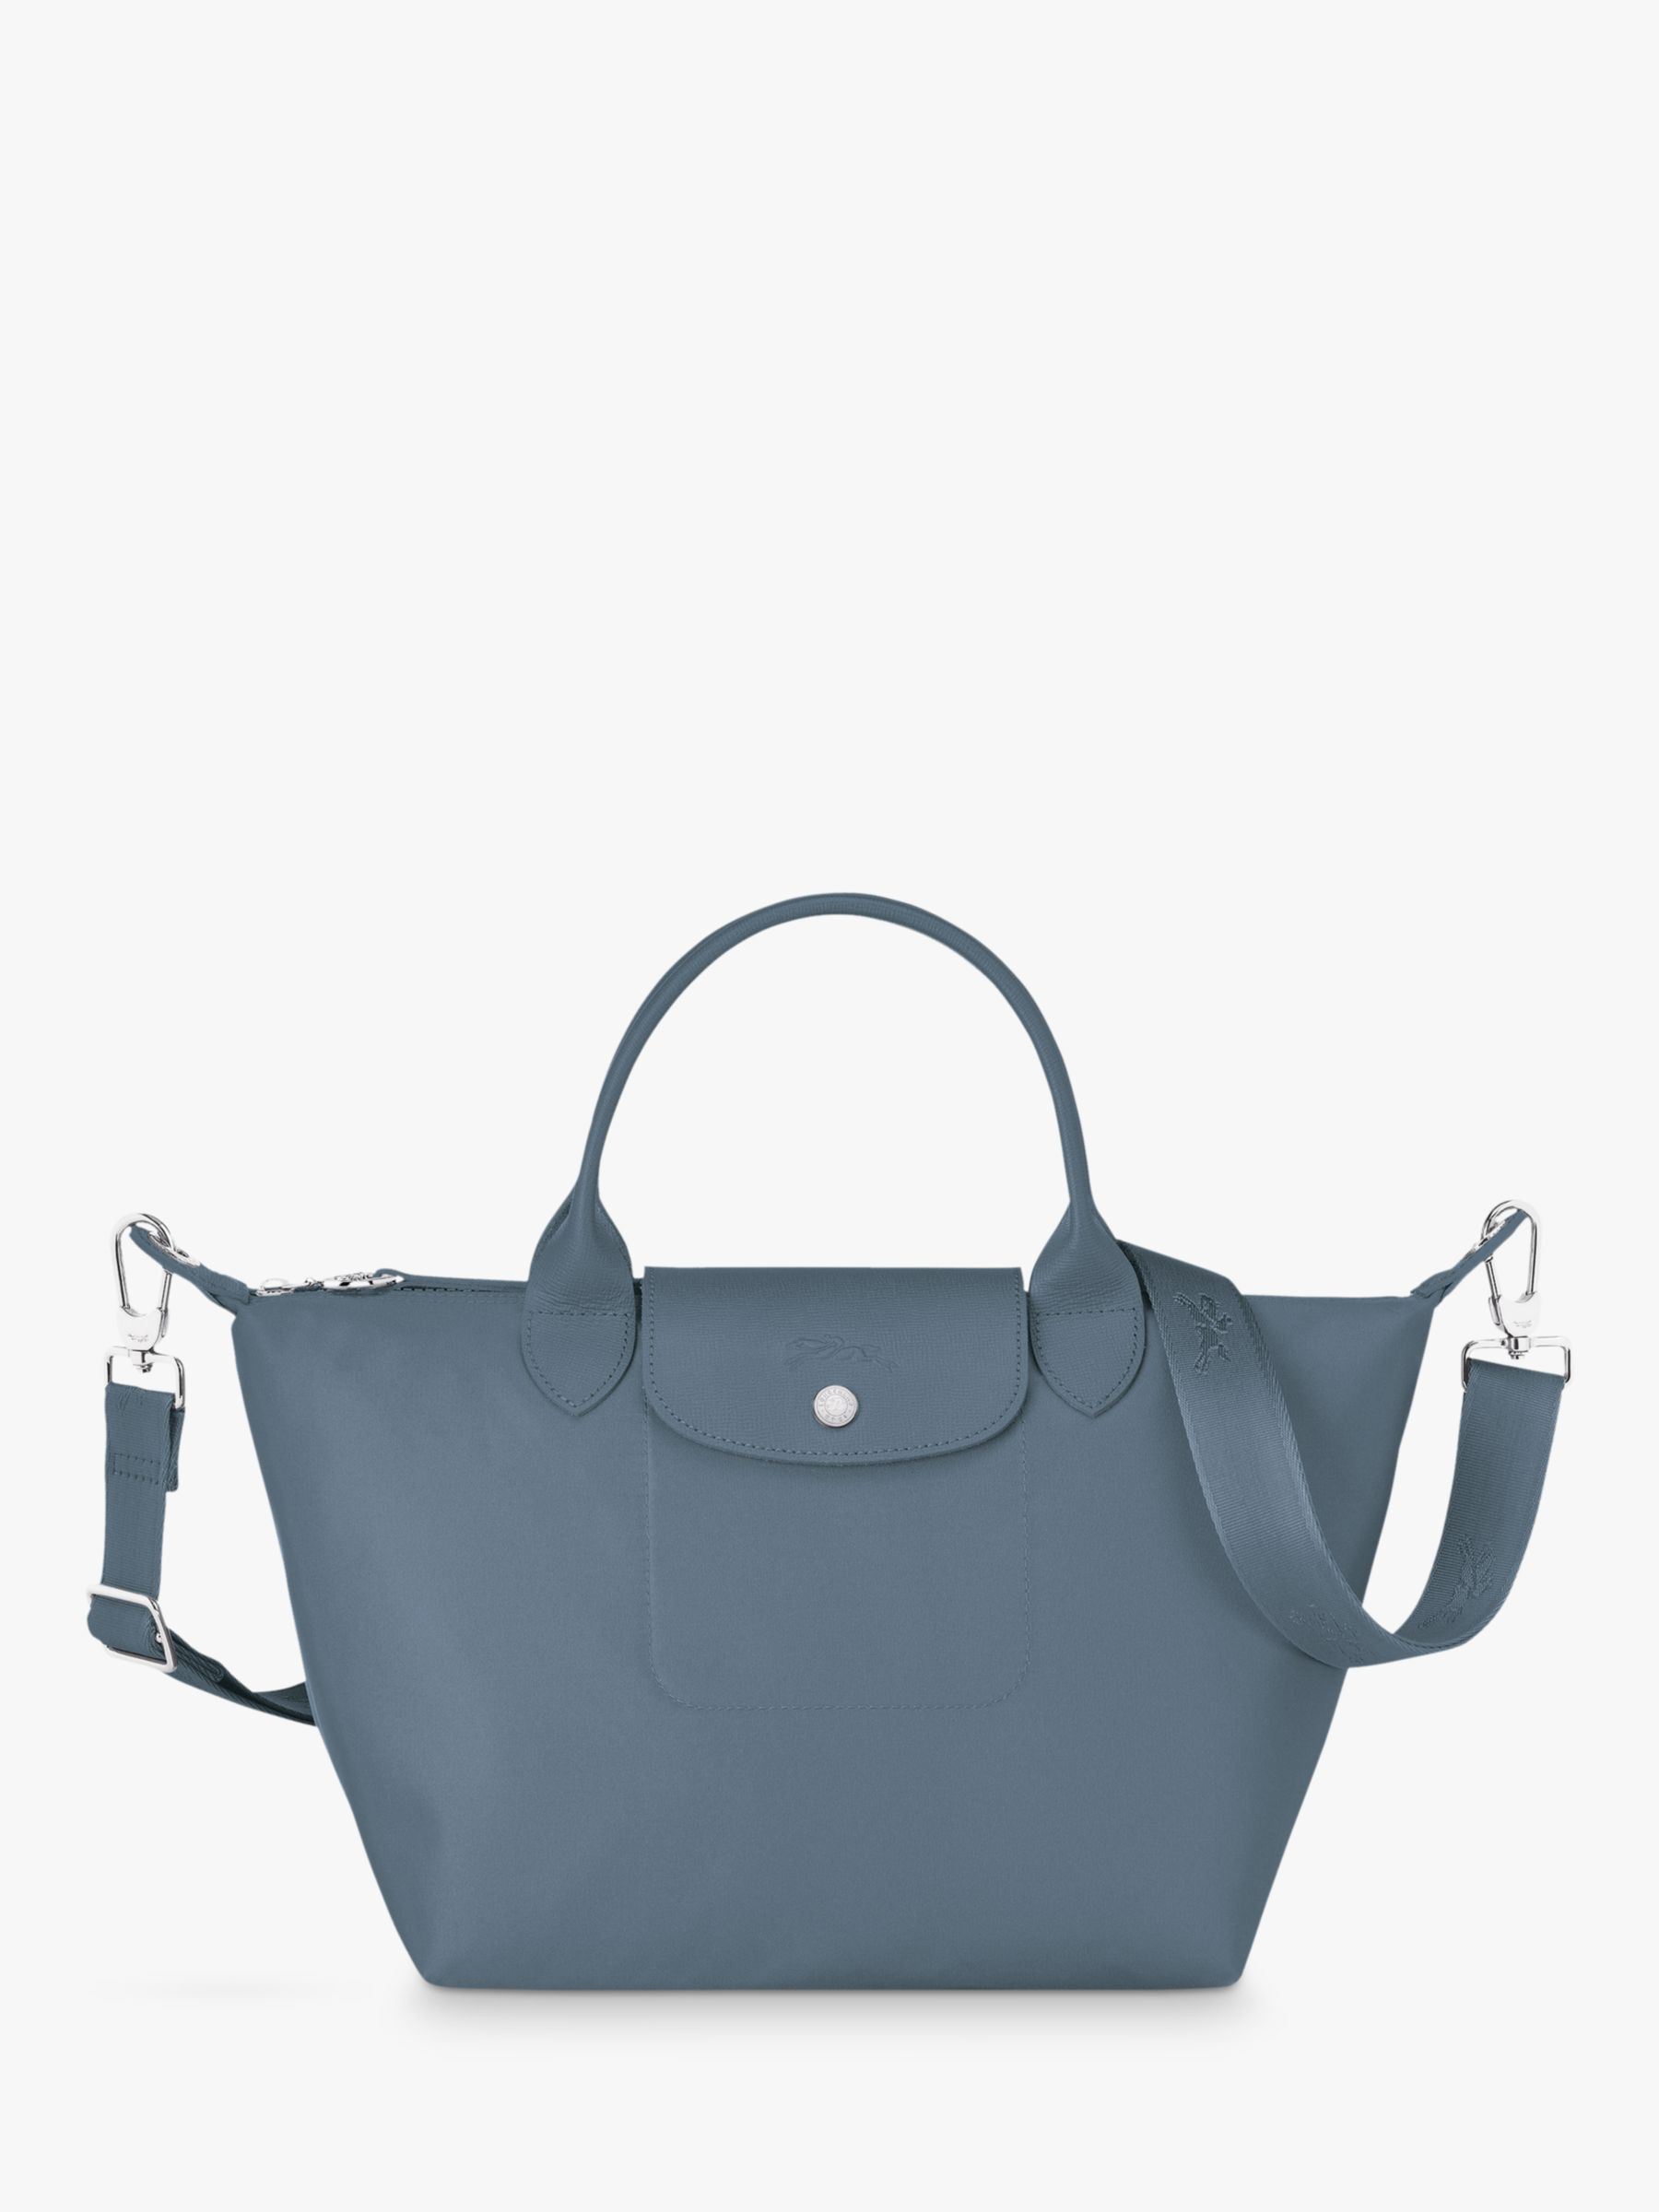 Longchamp - Le Pliage Neo Nordic color 💙 we love a soft pop of blue!